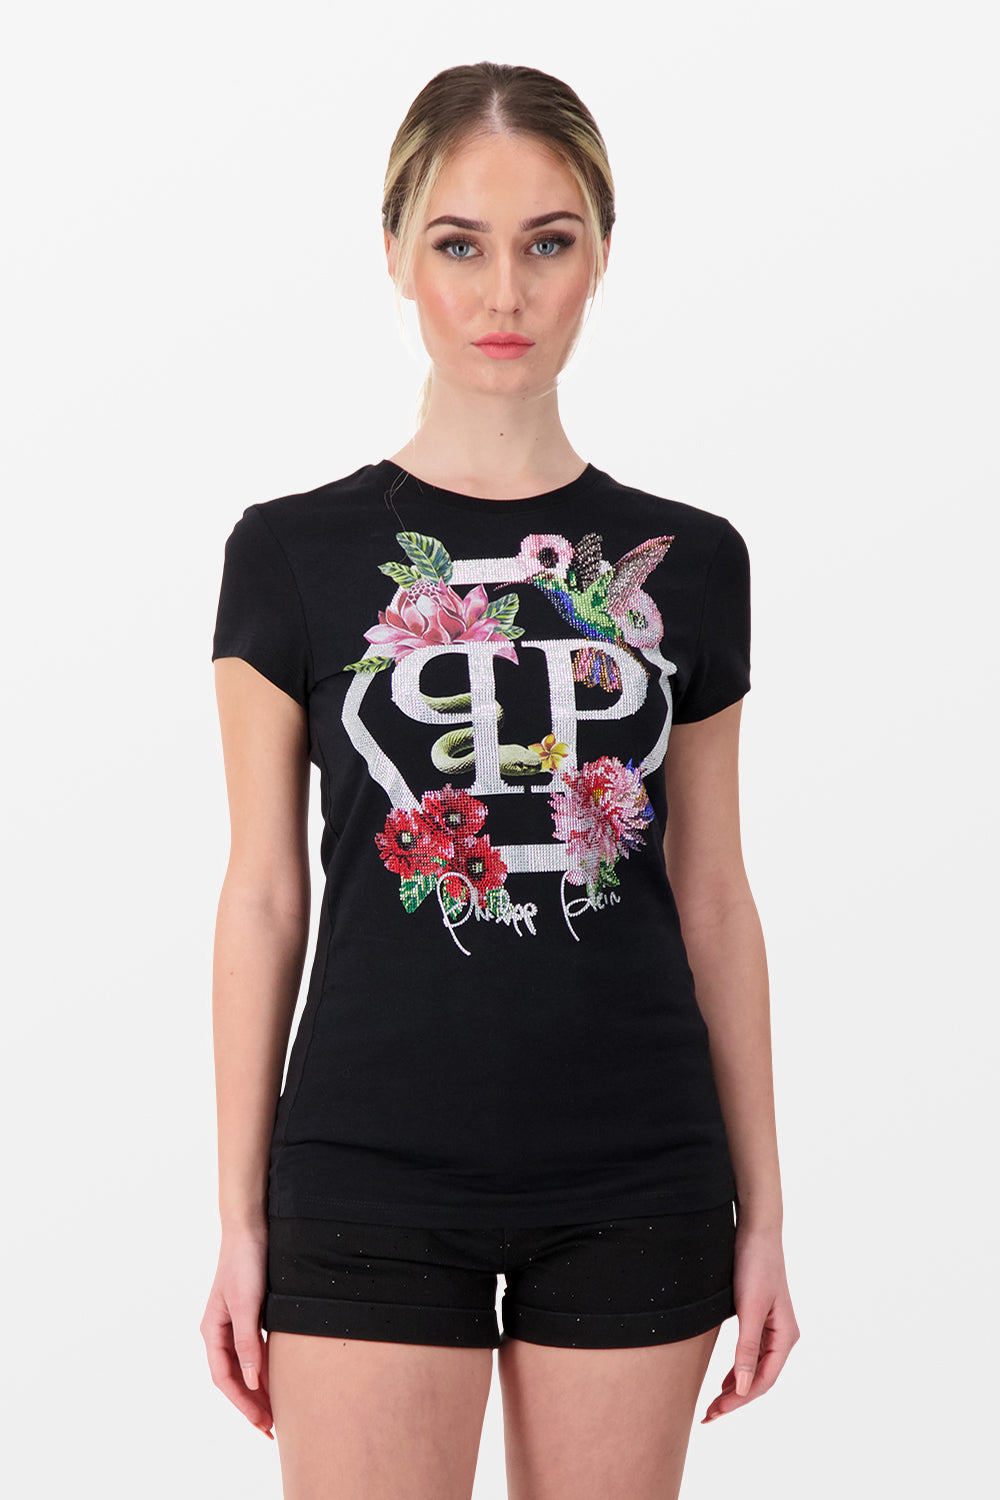 Philipp Plein Black SS Flowers 2 Round Neck T-Shirt